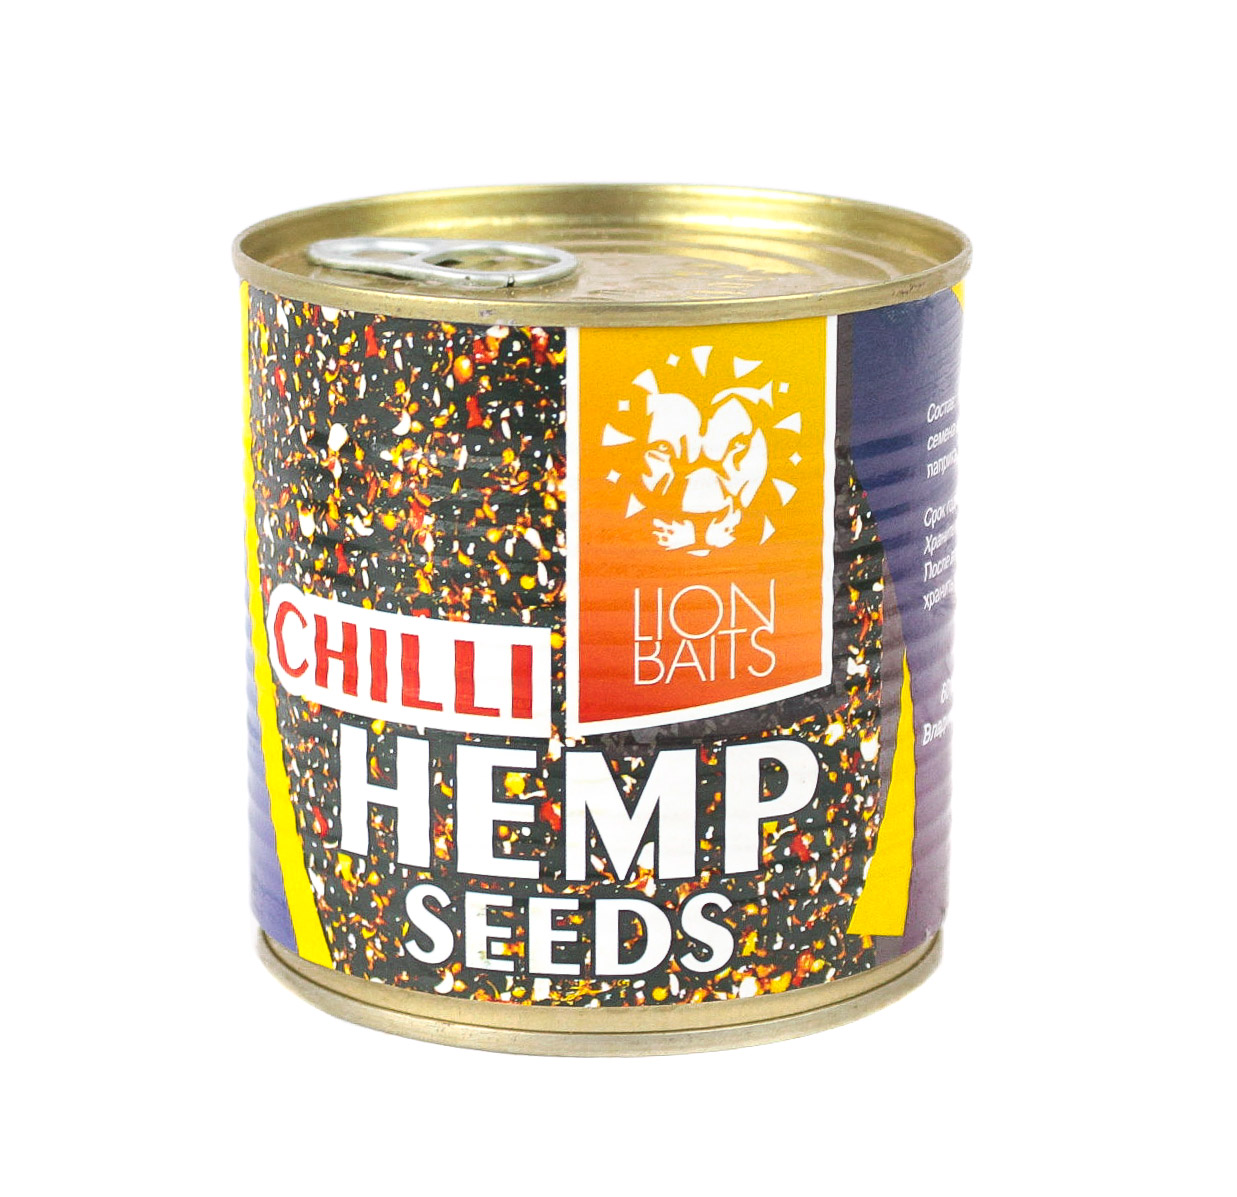 Консервированная зерновая смесь Lion Baits hemp seeds chili 430мл - фото 1